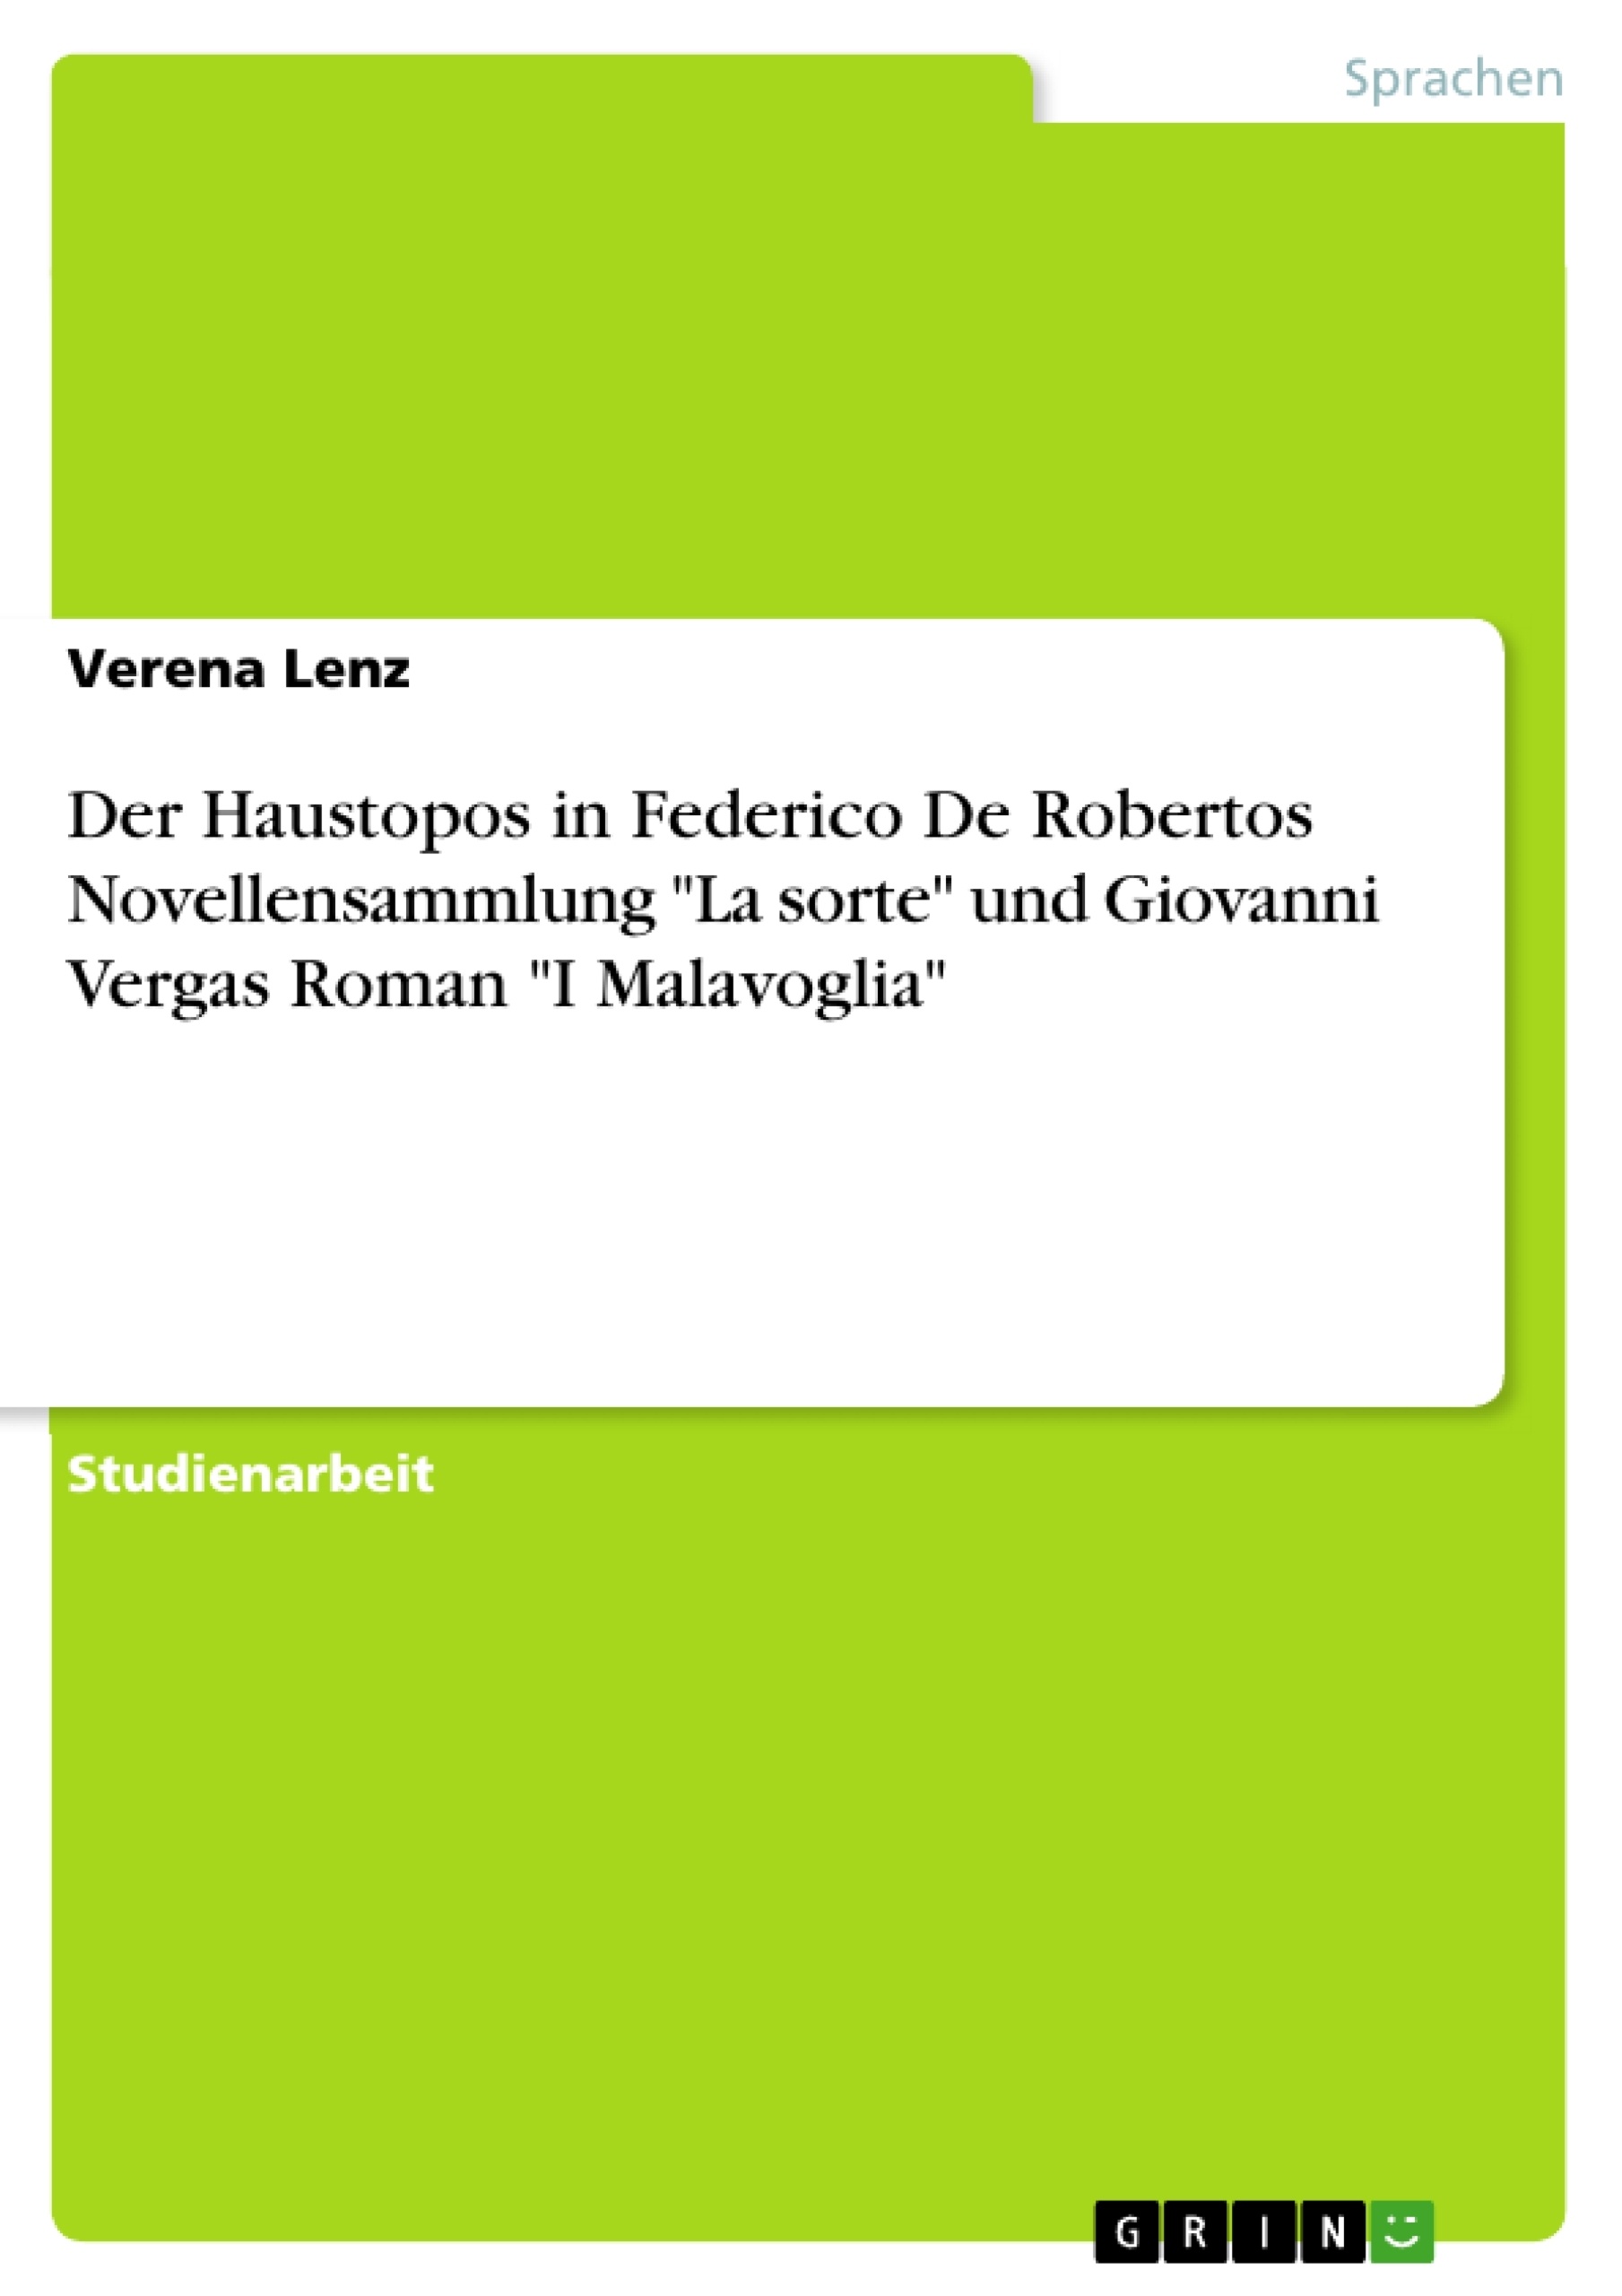 Title: Der Haustopos in Federico De Robertos Novellensammlung "La sorte" und Giovanni Vergas Roman "I Malavoglia"